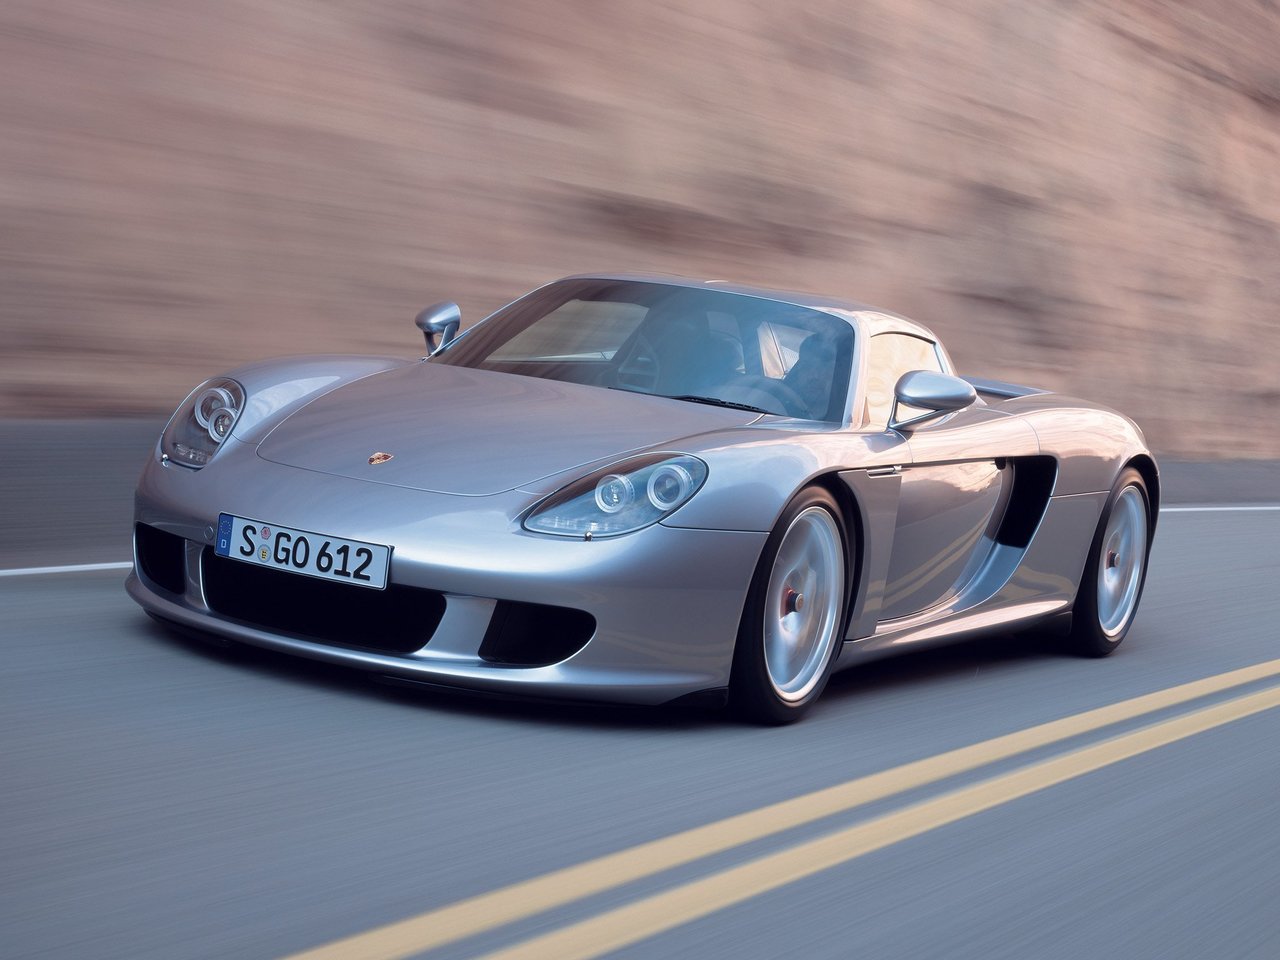 Расход газа одной комплектации тарга Porsche Carrera GT. Разница стоимости заправки газом и бензином. Автономный пробег до и после установки ГБО.